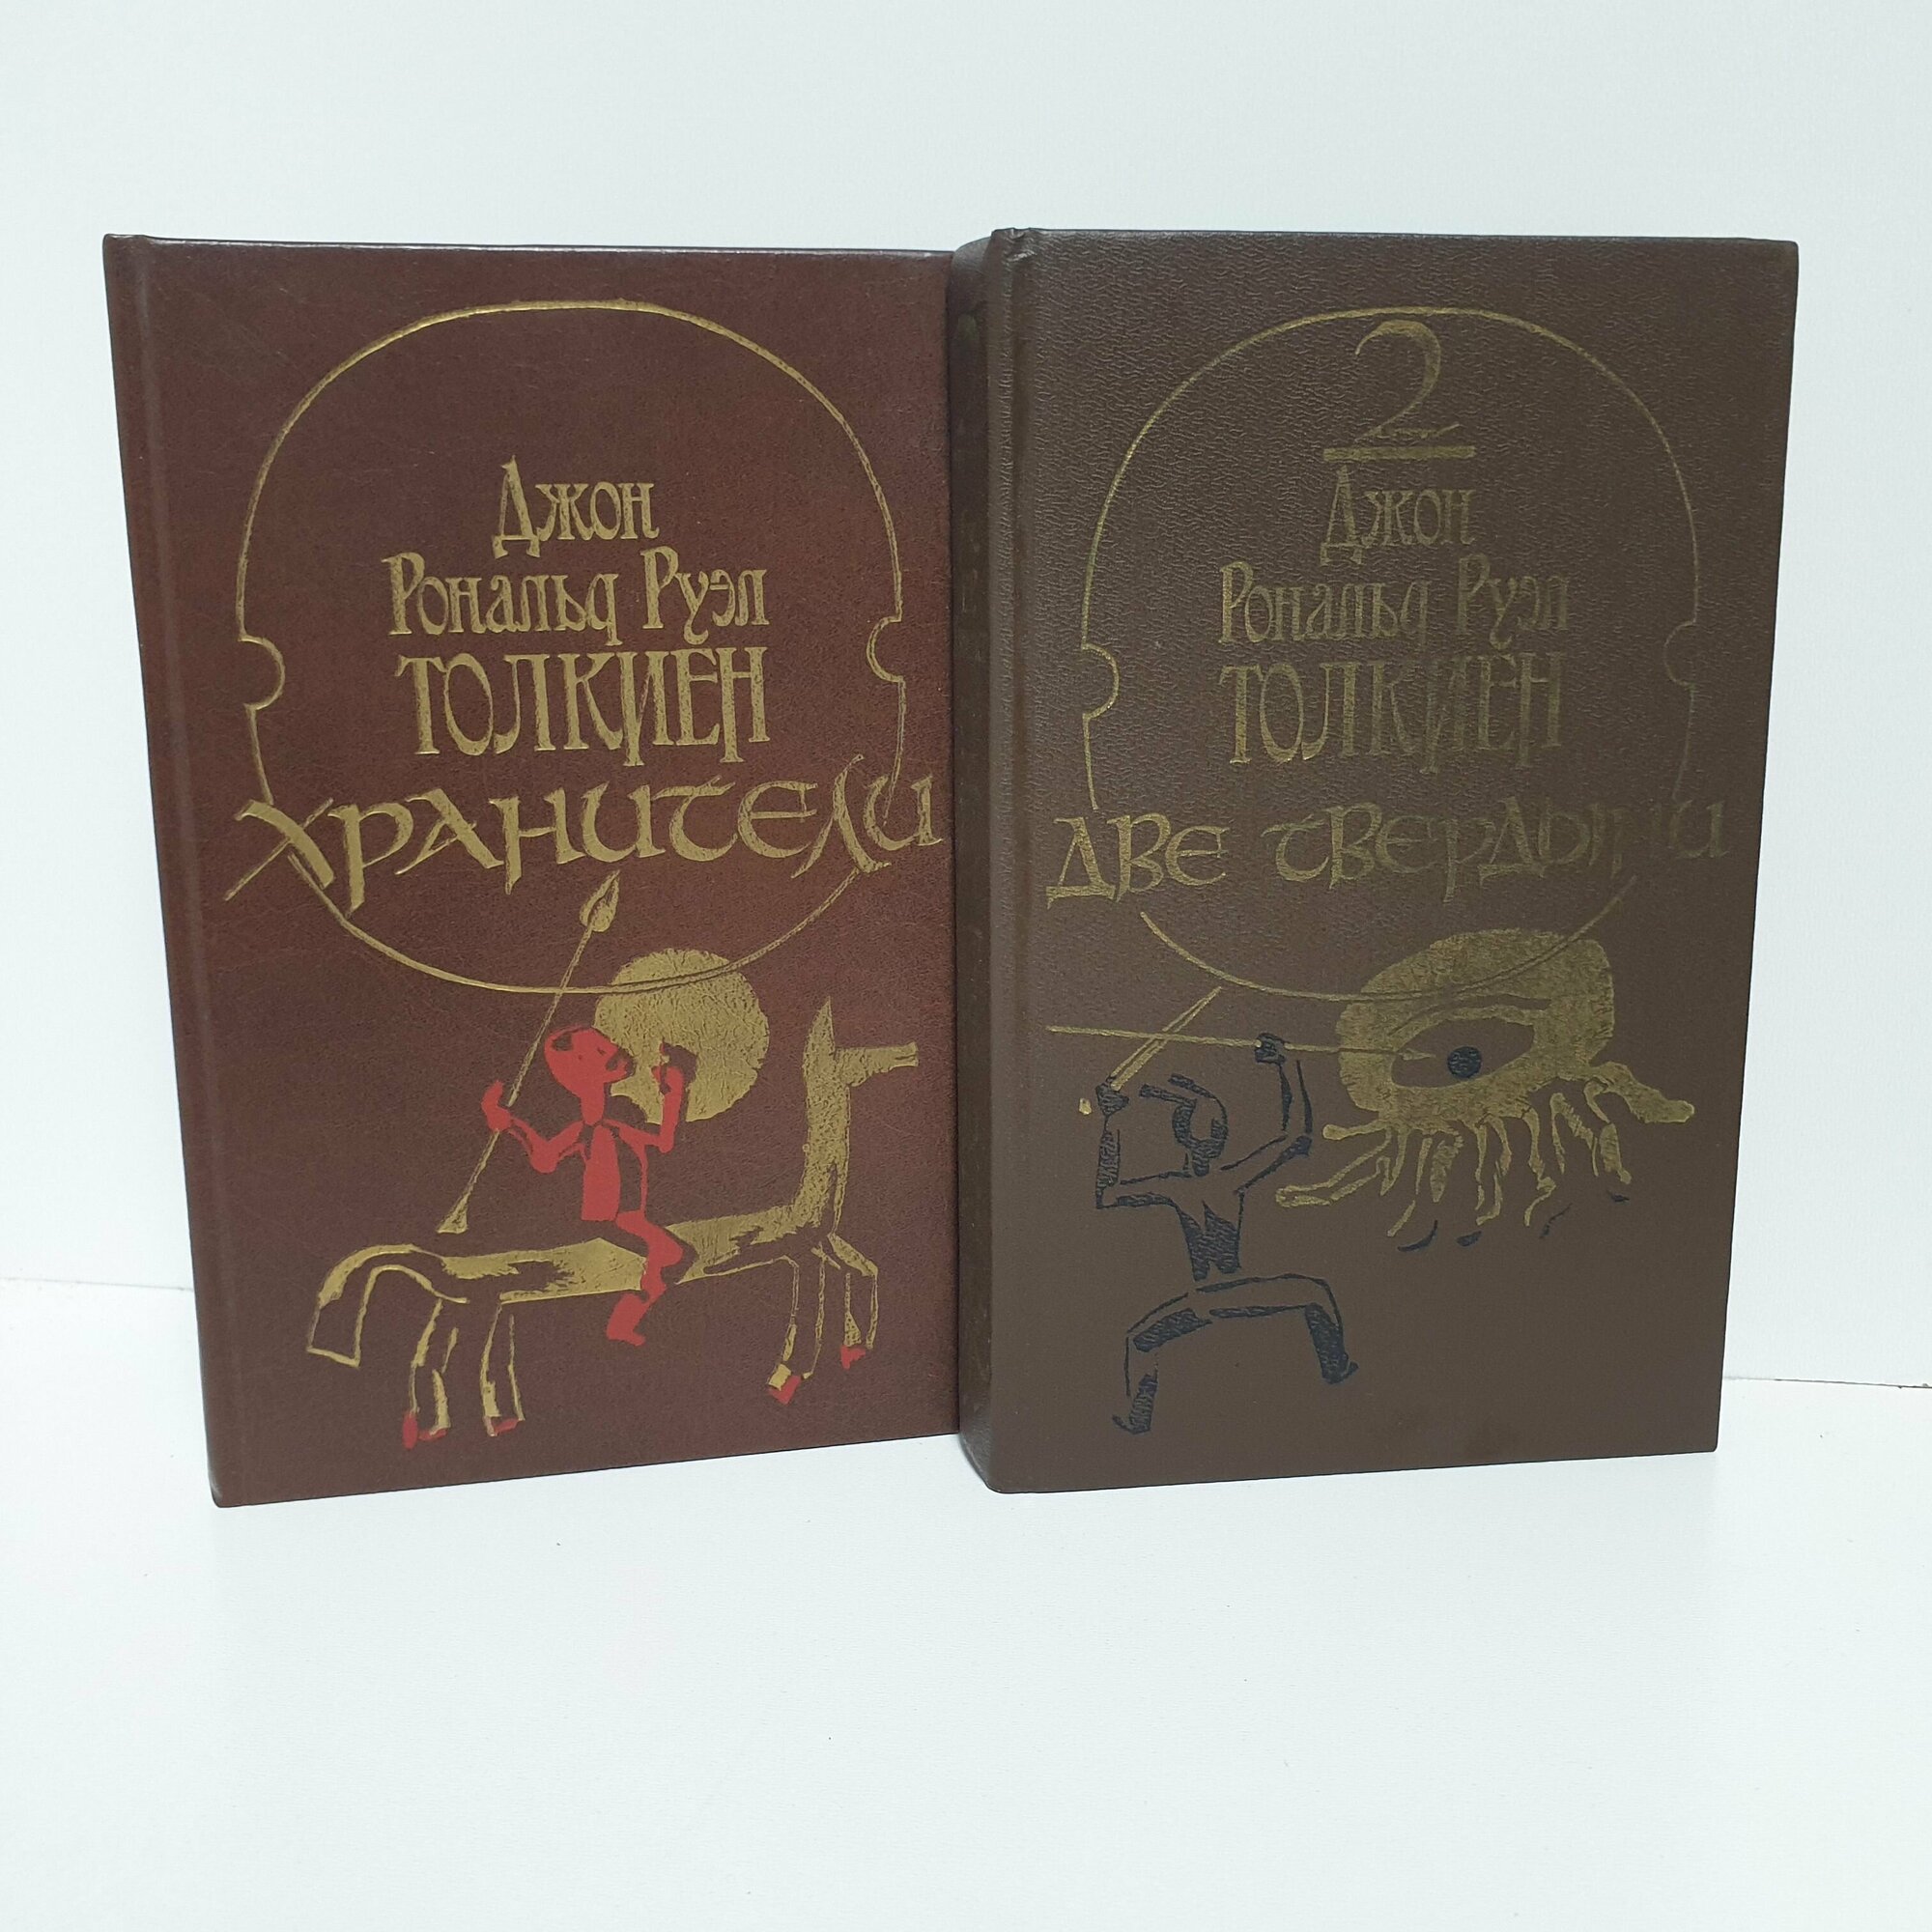 Хранители. Две твердыни, 1990 г. (комплект из 2 книг) Руэл Толкиен Джон Рональд.